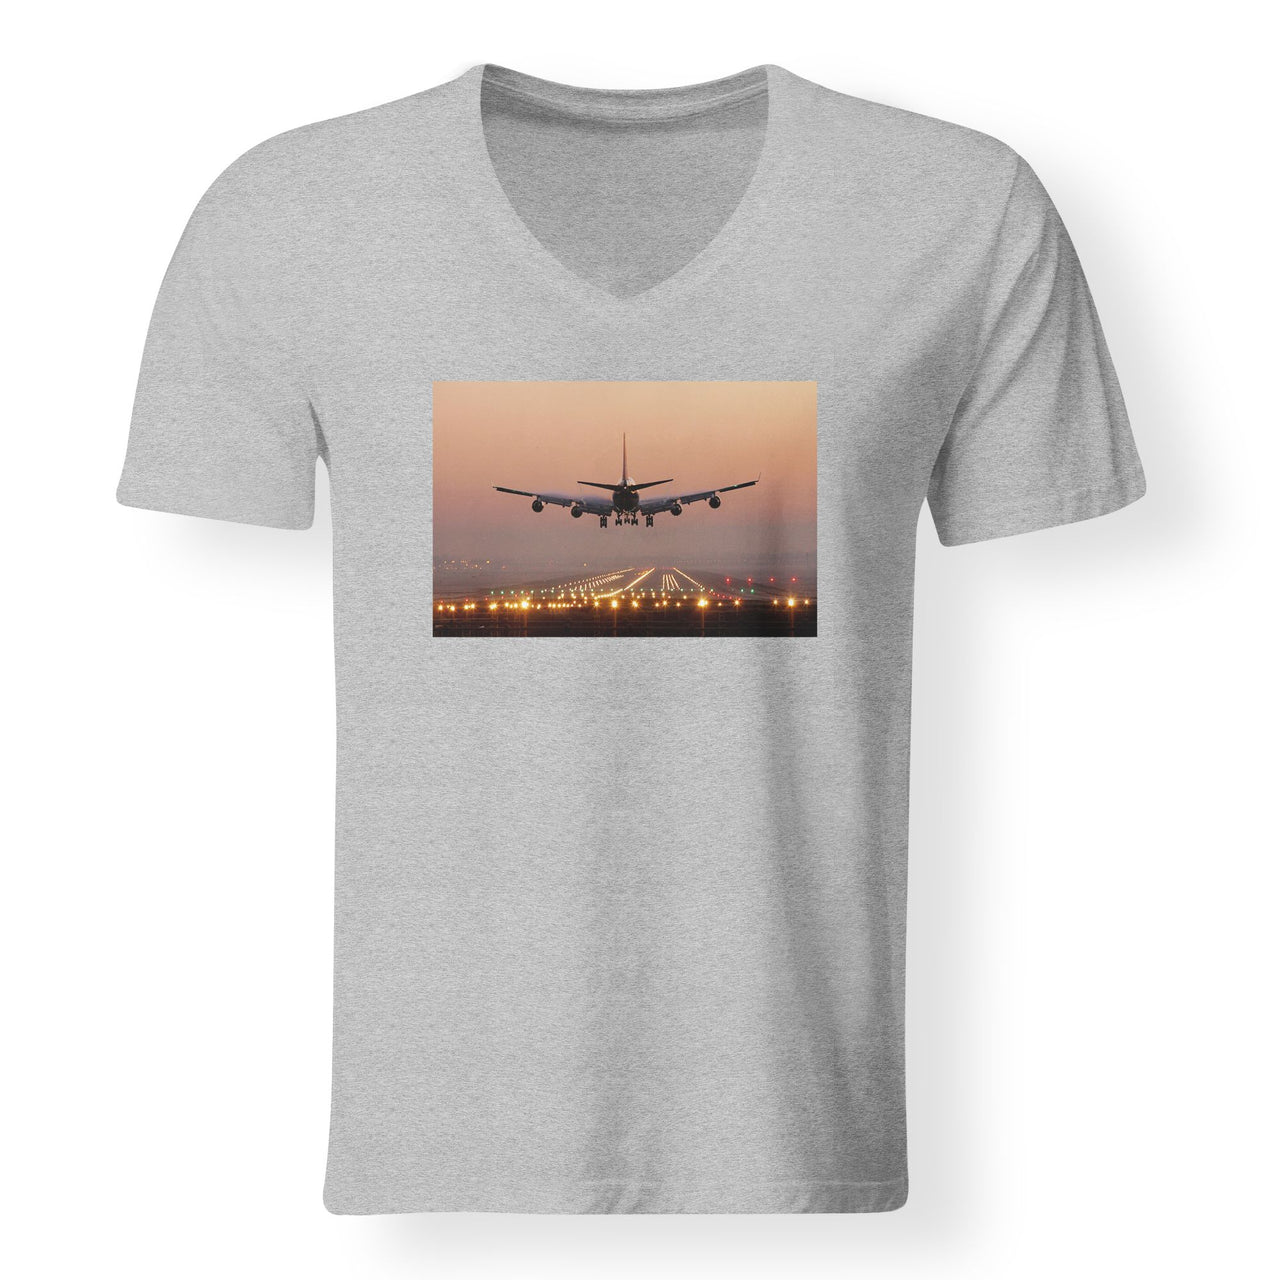 Landing Boeing 747 During Sunset Designed V-Neck T-Shirts